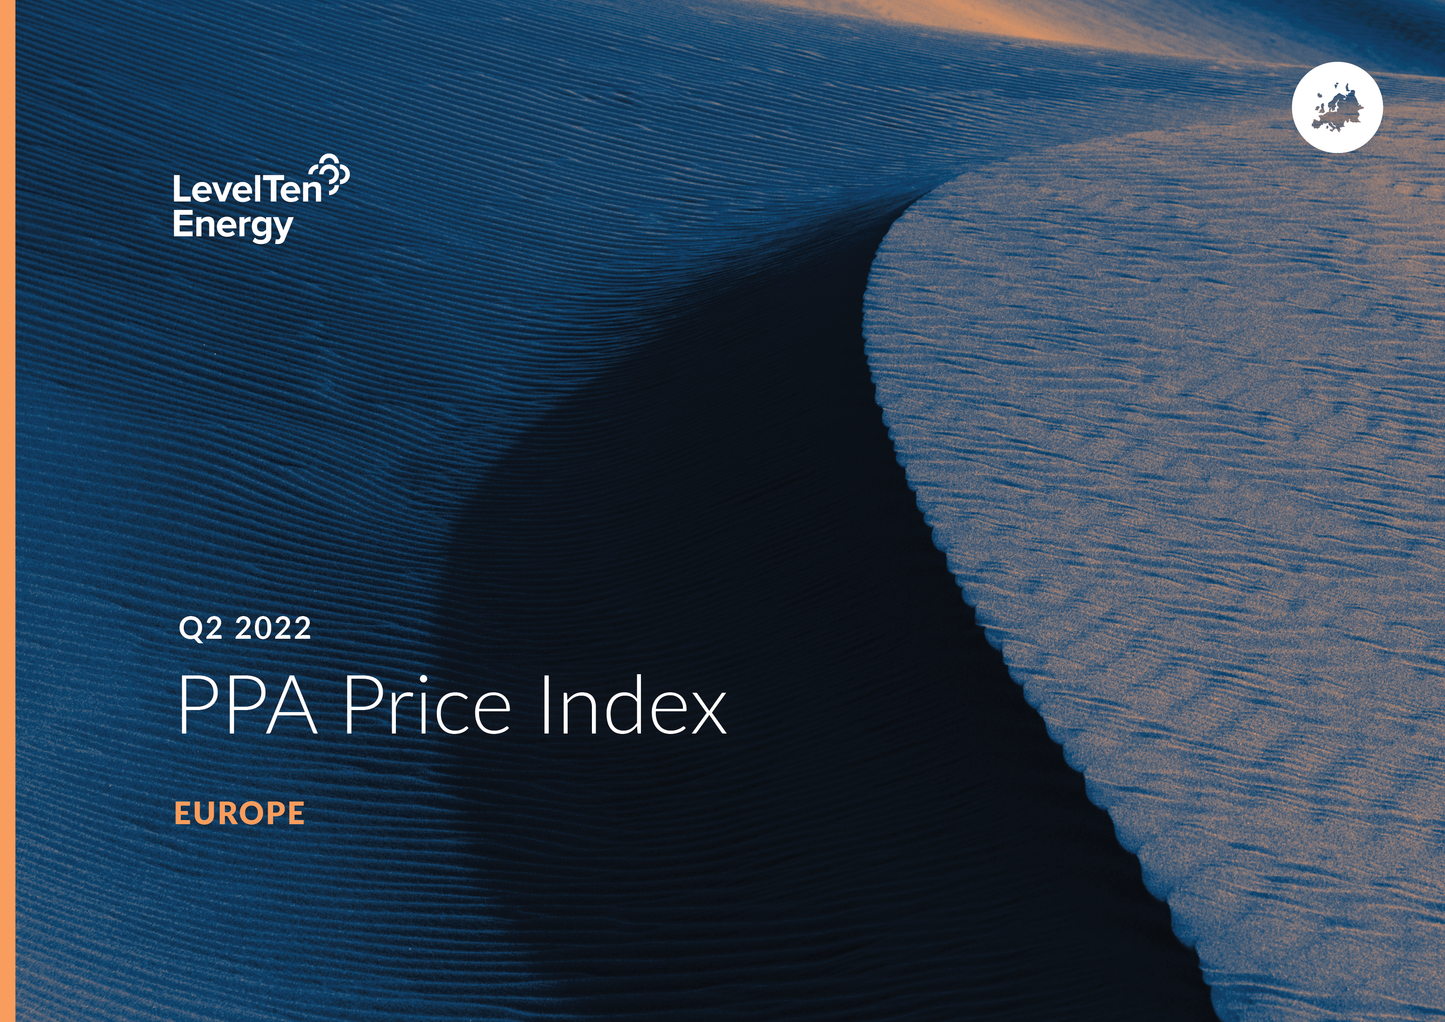 Q2 2022 PPA Price Index - Europe